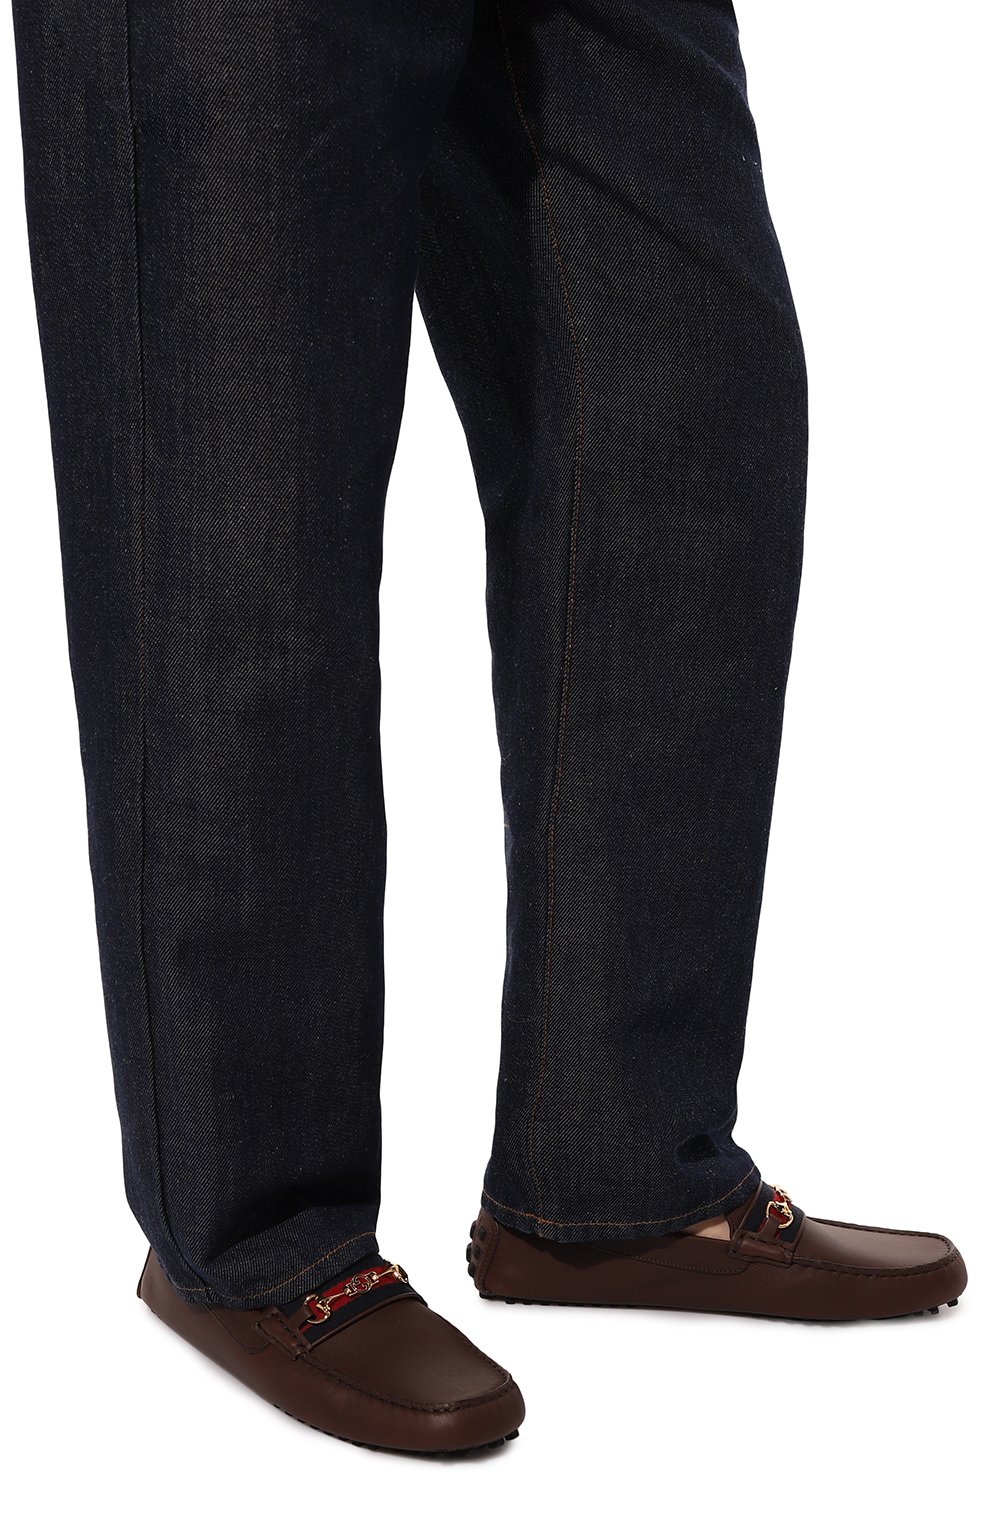 Мужские кожаные мокасины ayrton GUCCI коричневого цвета, арт. 624698 1XH10 | Фото 3 (Стили: Кэжуэл)